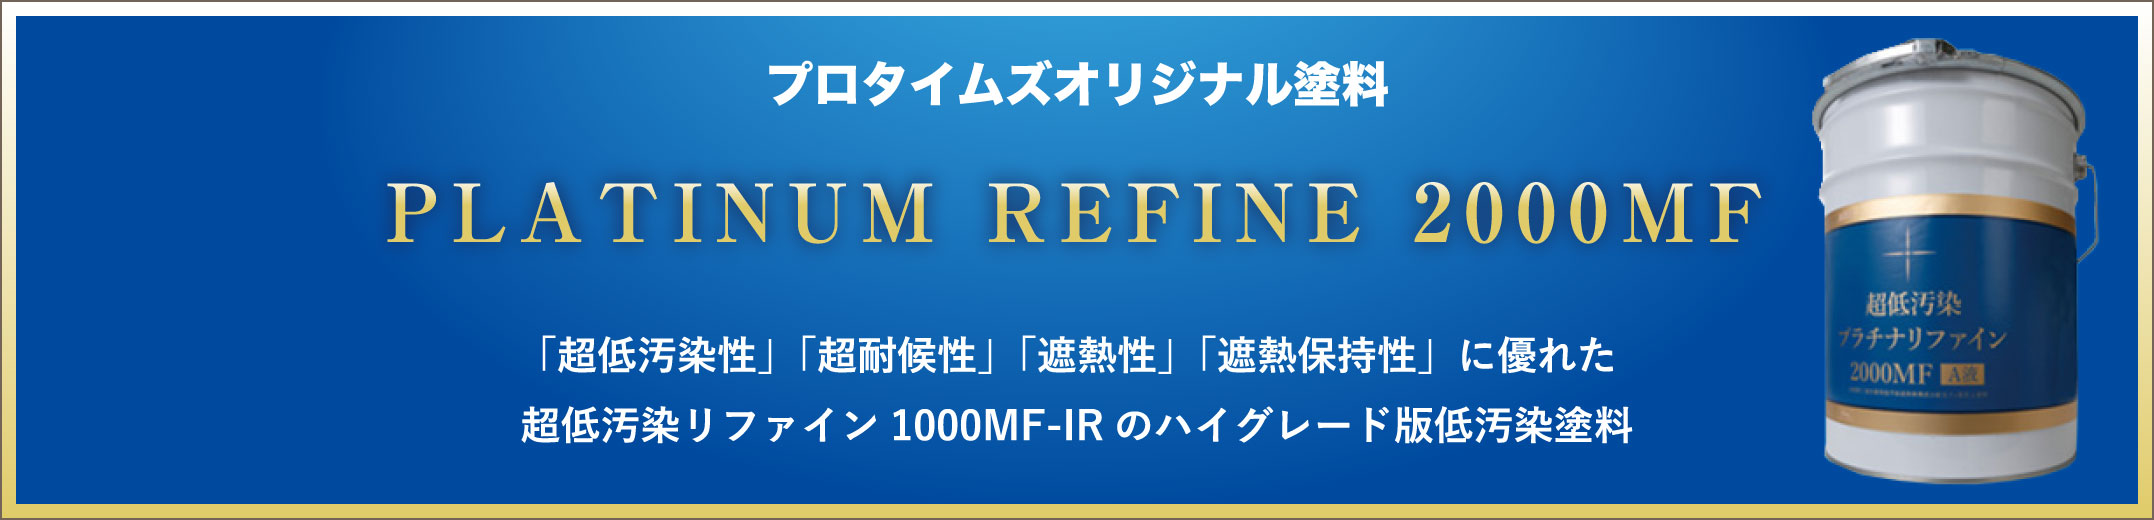 プロタイムズオリジナル塗料 PLATINUM REFINE 2000MF